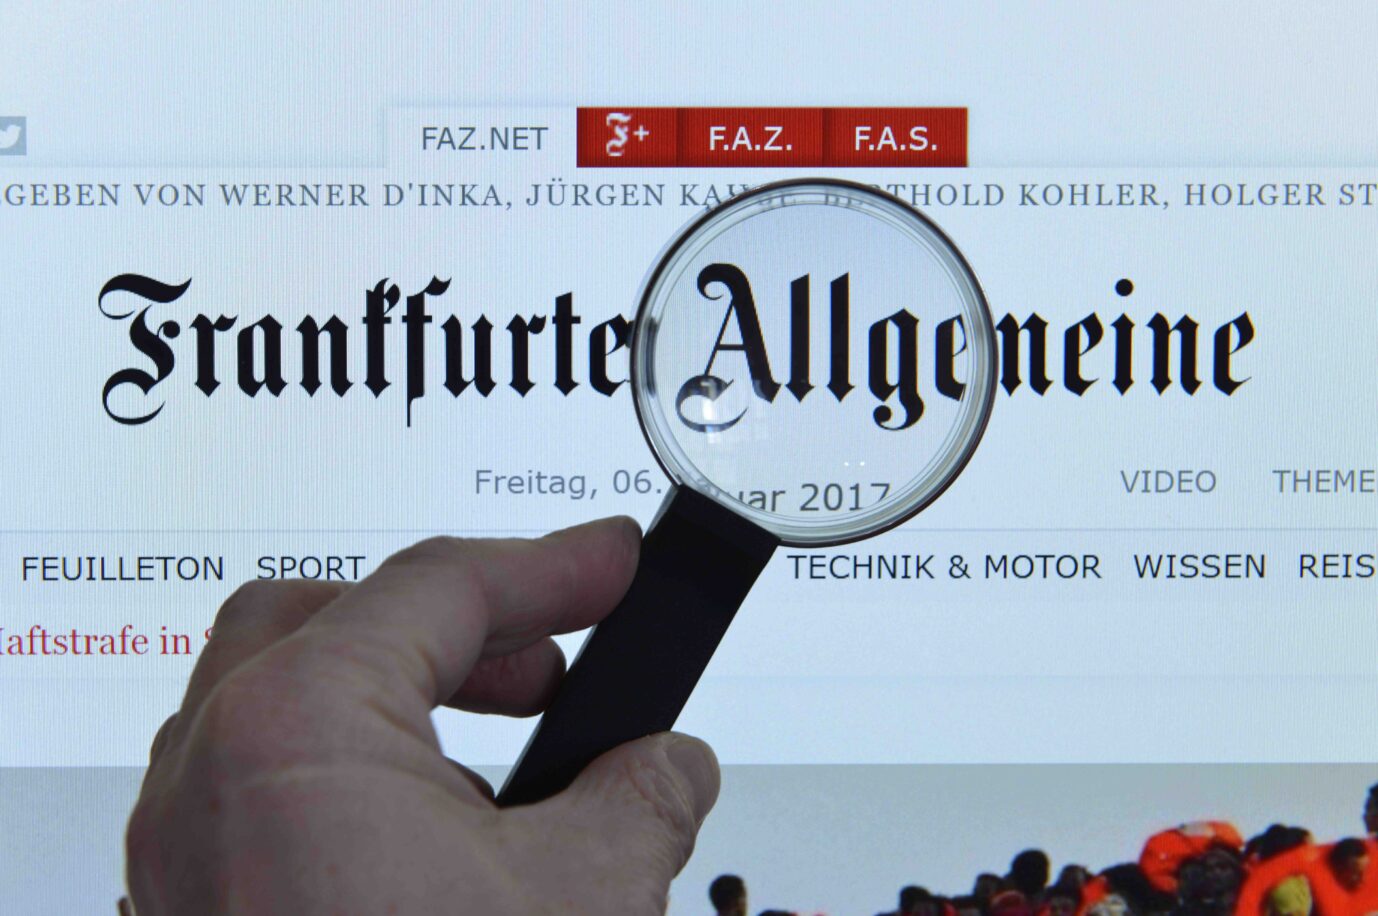 Die Internetseite der Frankfurter Allgemeinen Zeitung, FAZ.